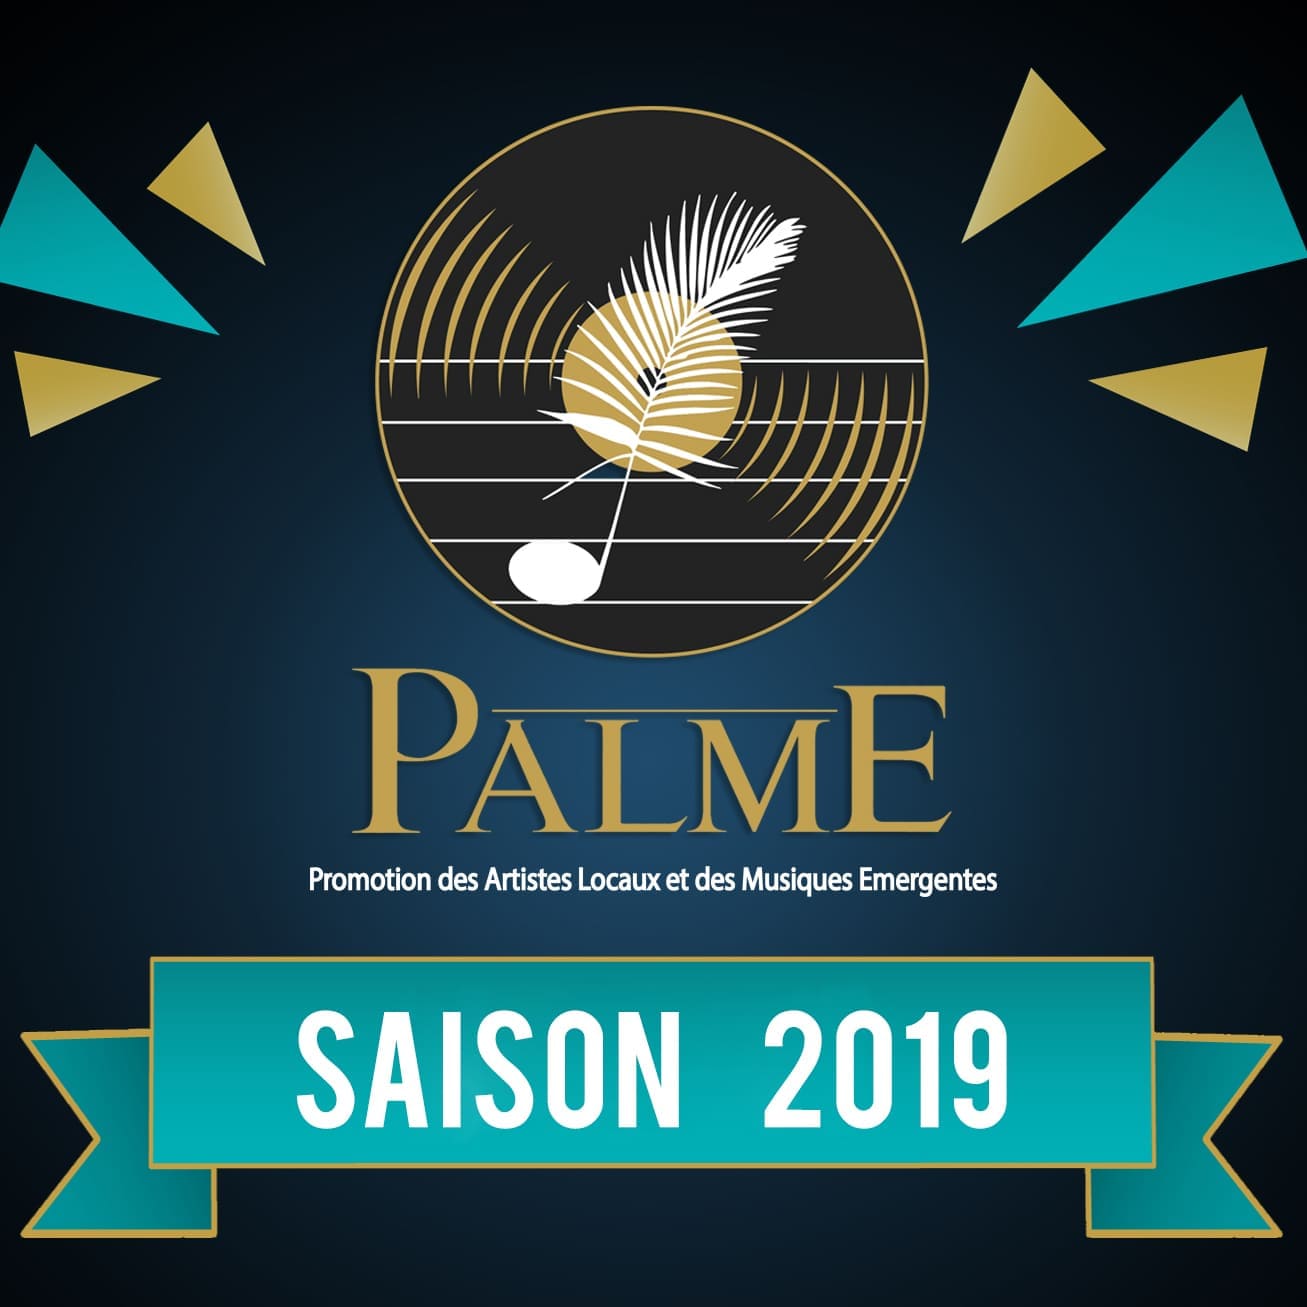 Les auditions PALME 2019 sont ouvertes !